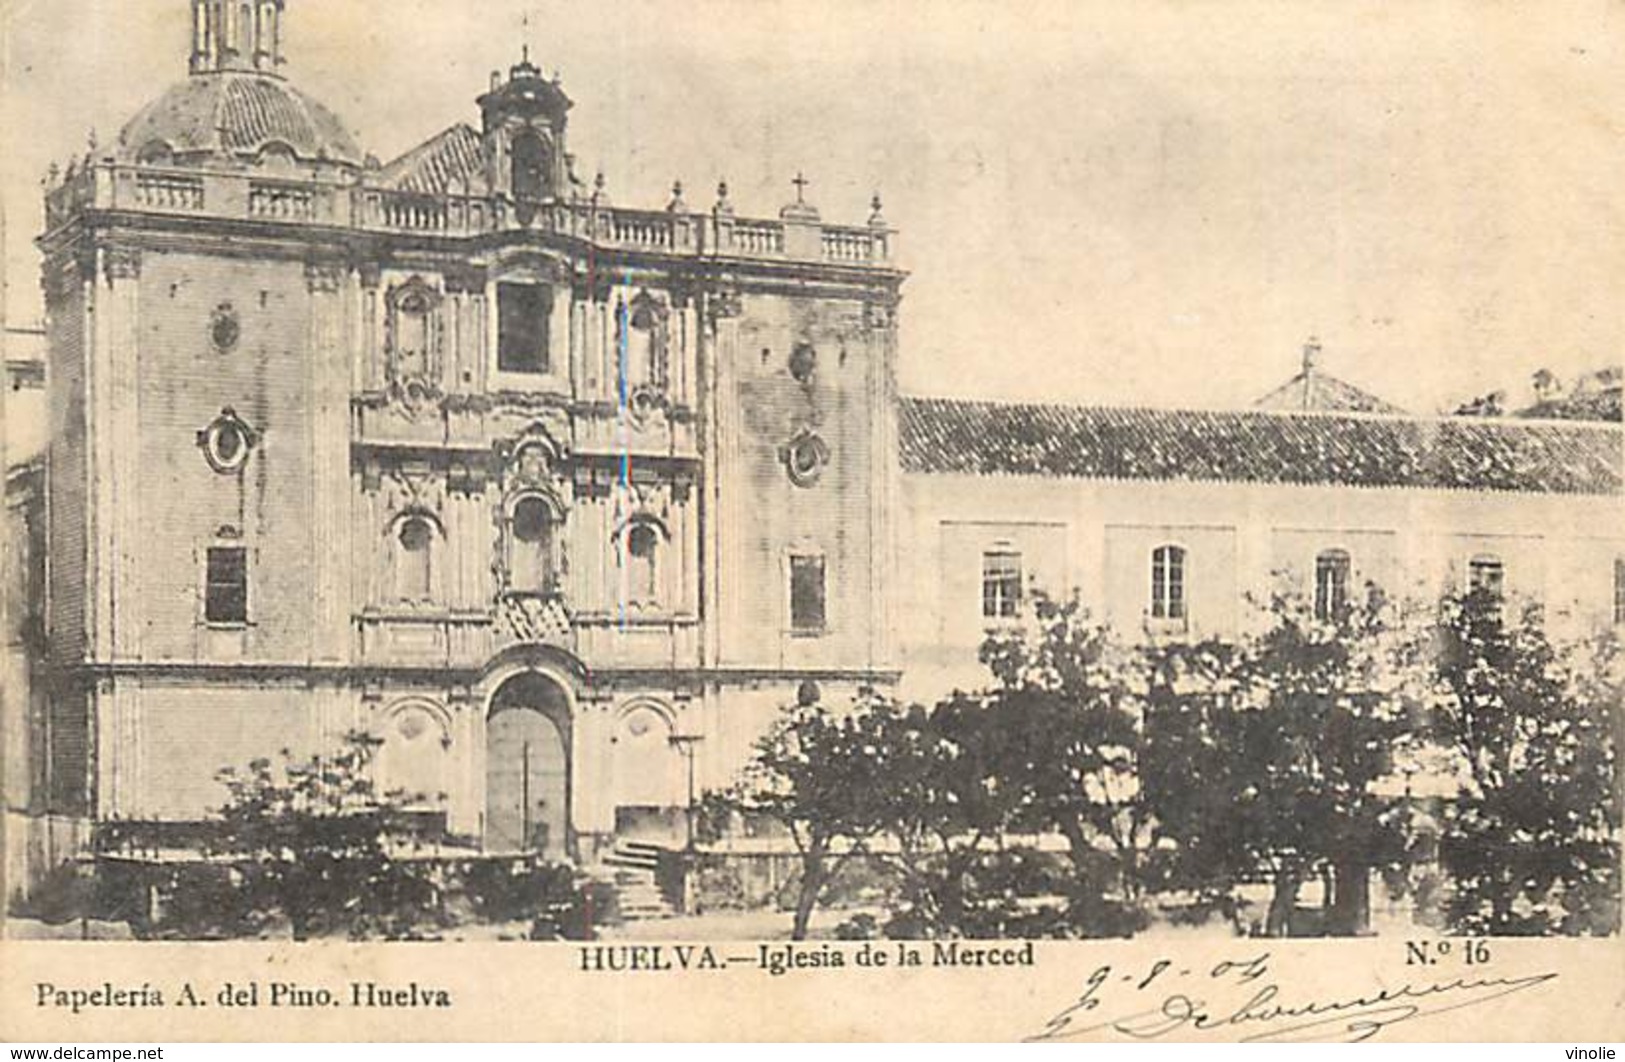 PIE-R-18-1723 : HUELVA. IGLESIA DE LA MERCED - Huelva